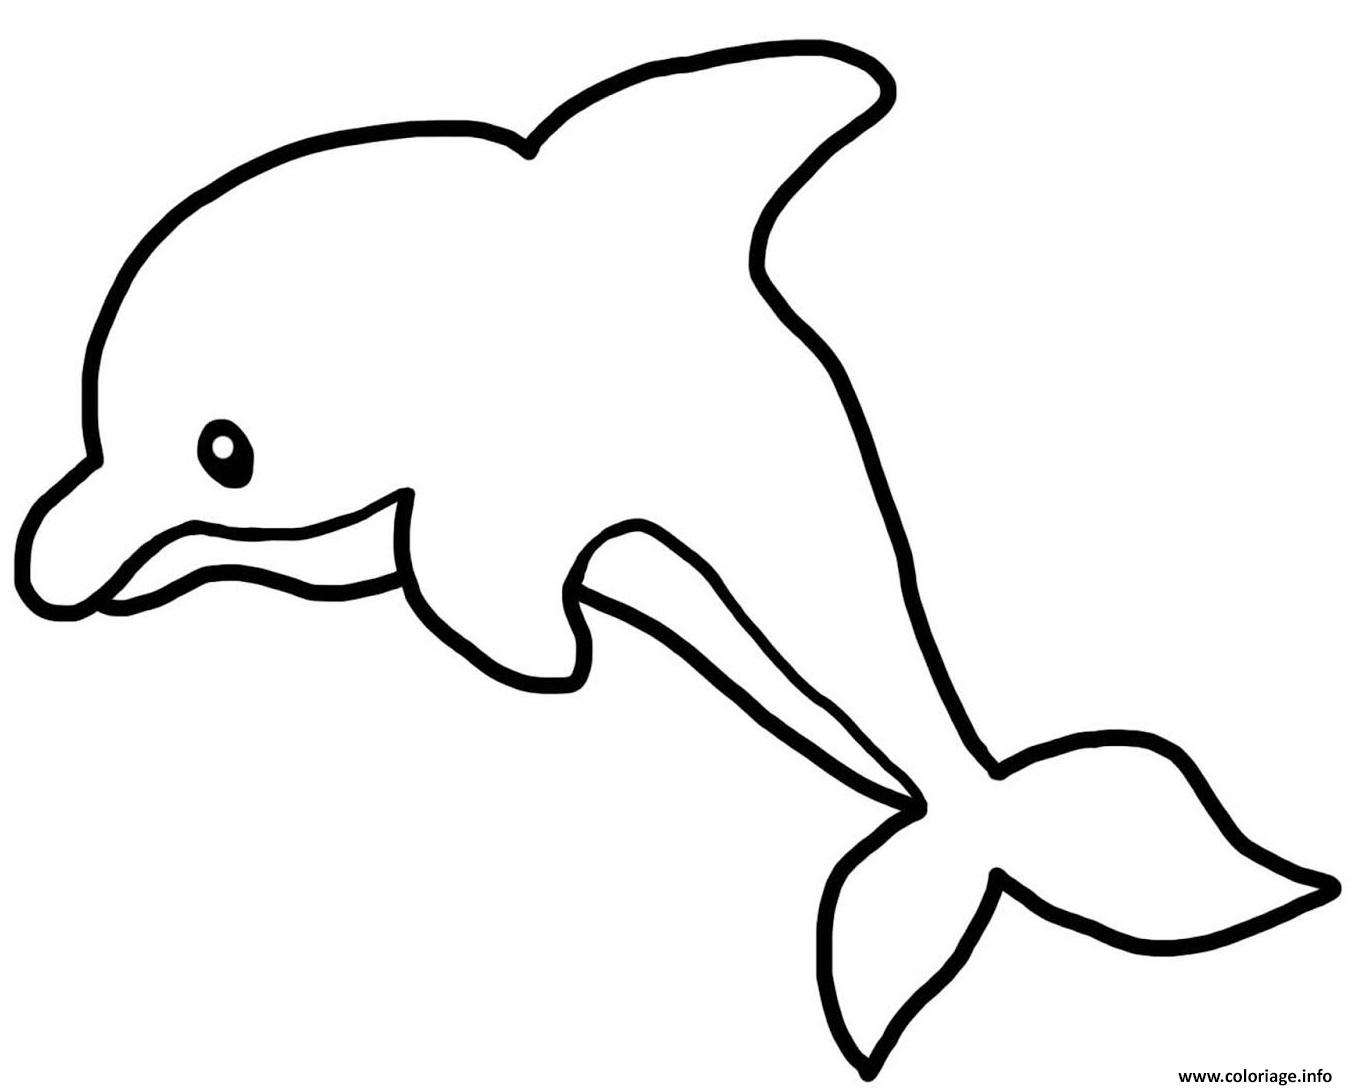 Dessin dauphin maternelle Coloriage Gratuit à Imprimer